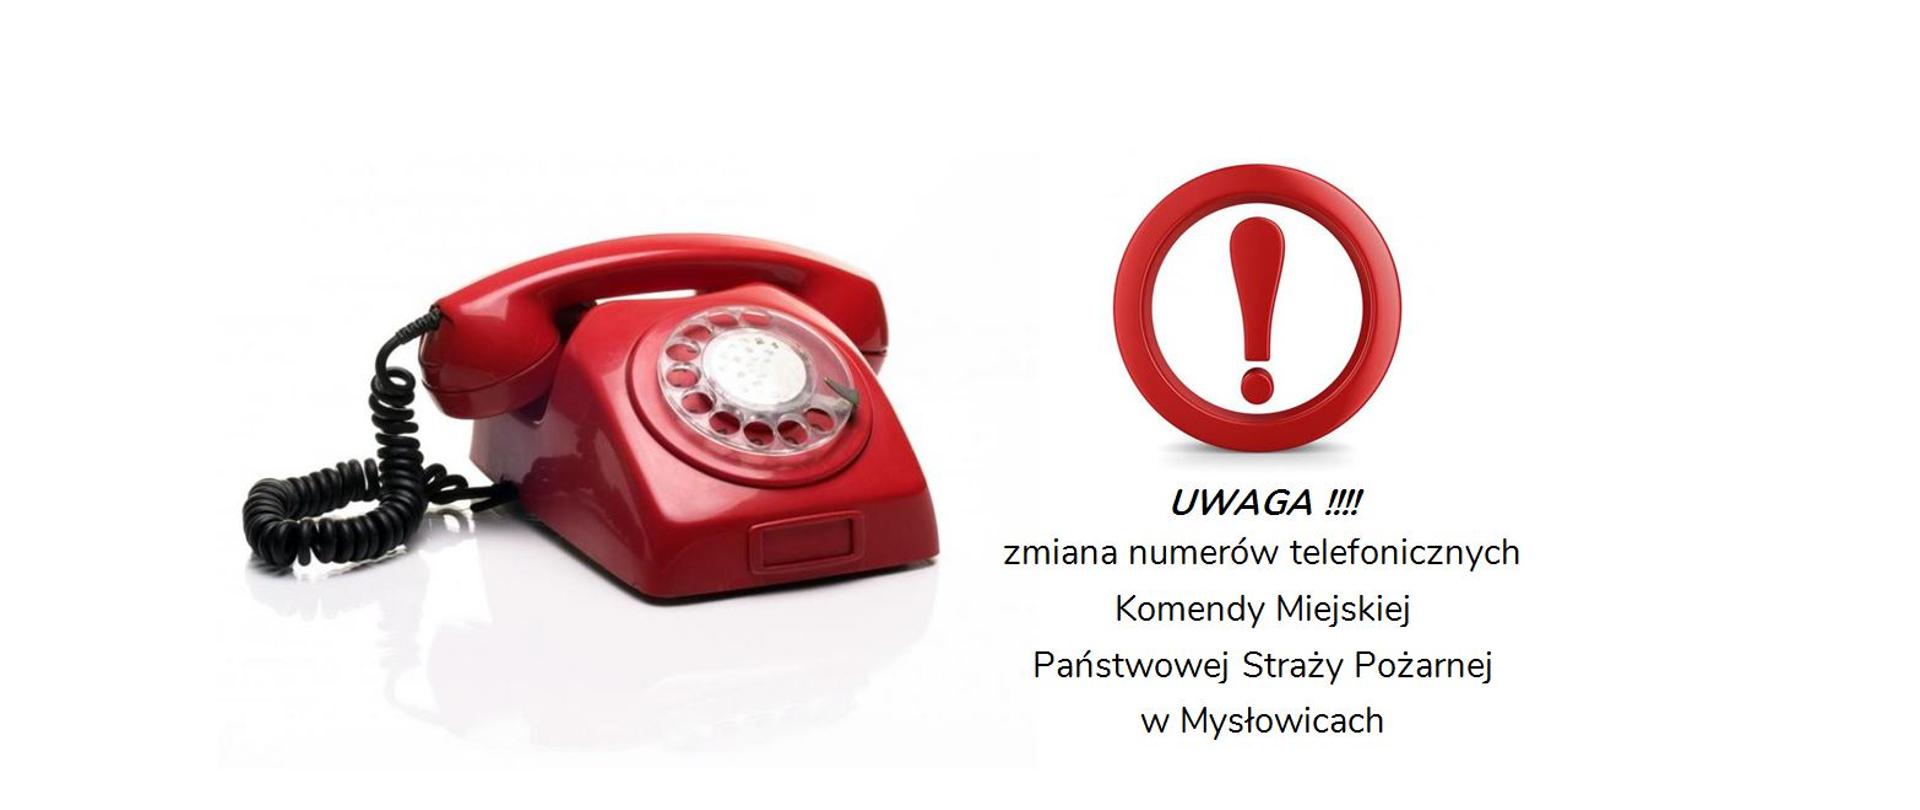 UWAGA !!!!
zmiana numerów telefonicznych Komendy Miejskiej
Państwowej Straży Pożarnej
w Mysłowicach
